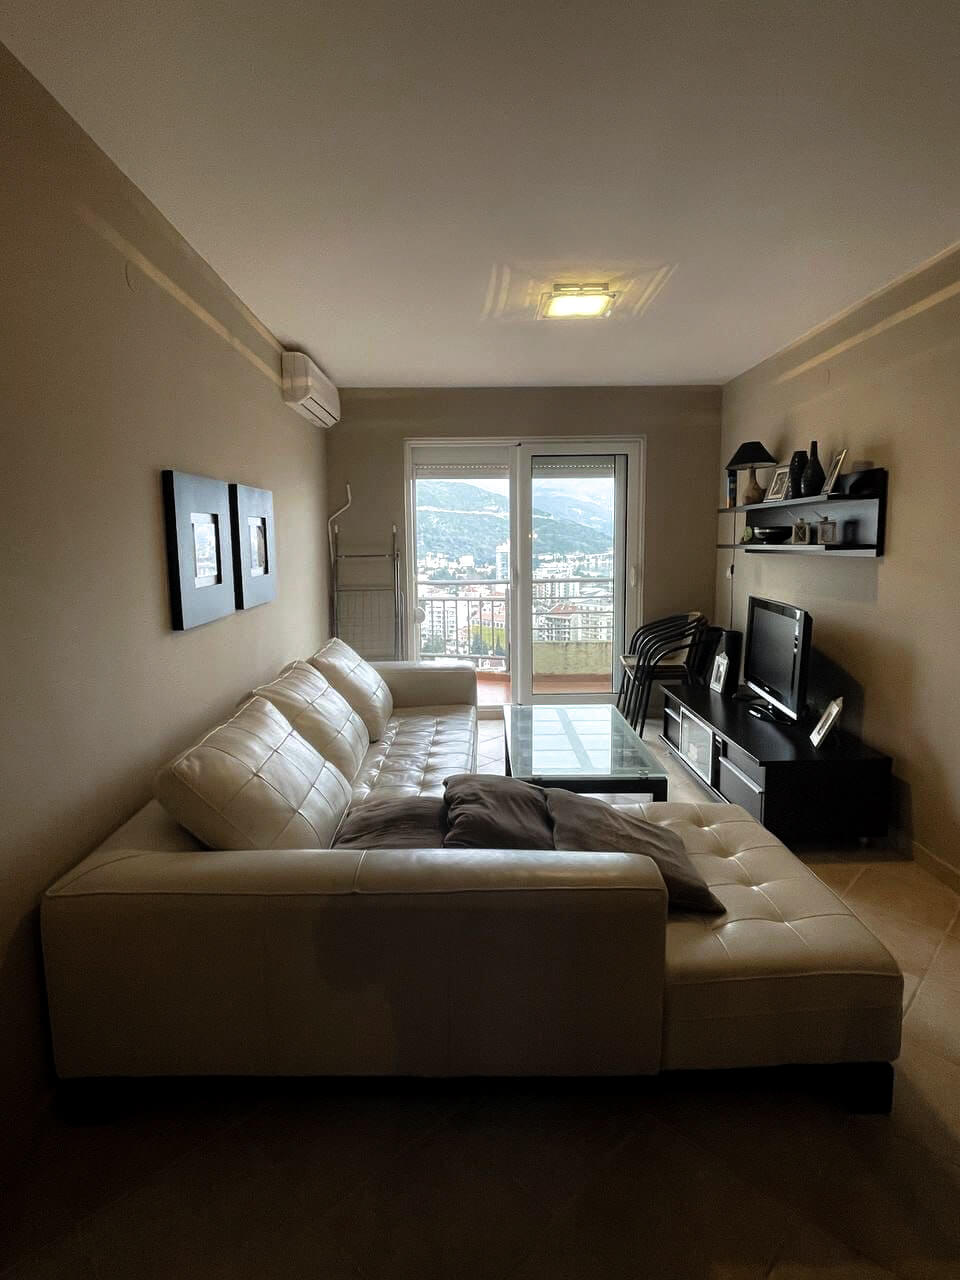 Купить 2 комнатную квартиру в Будве: общая комната